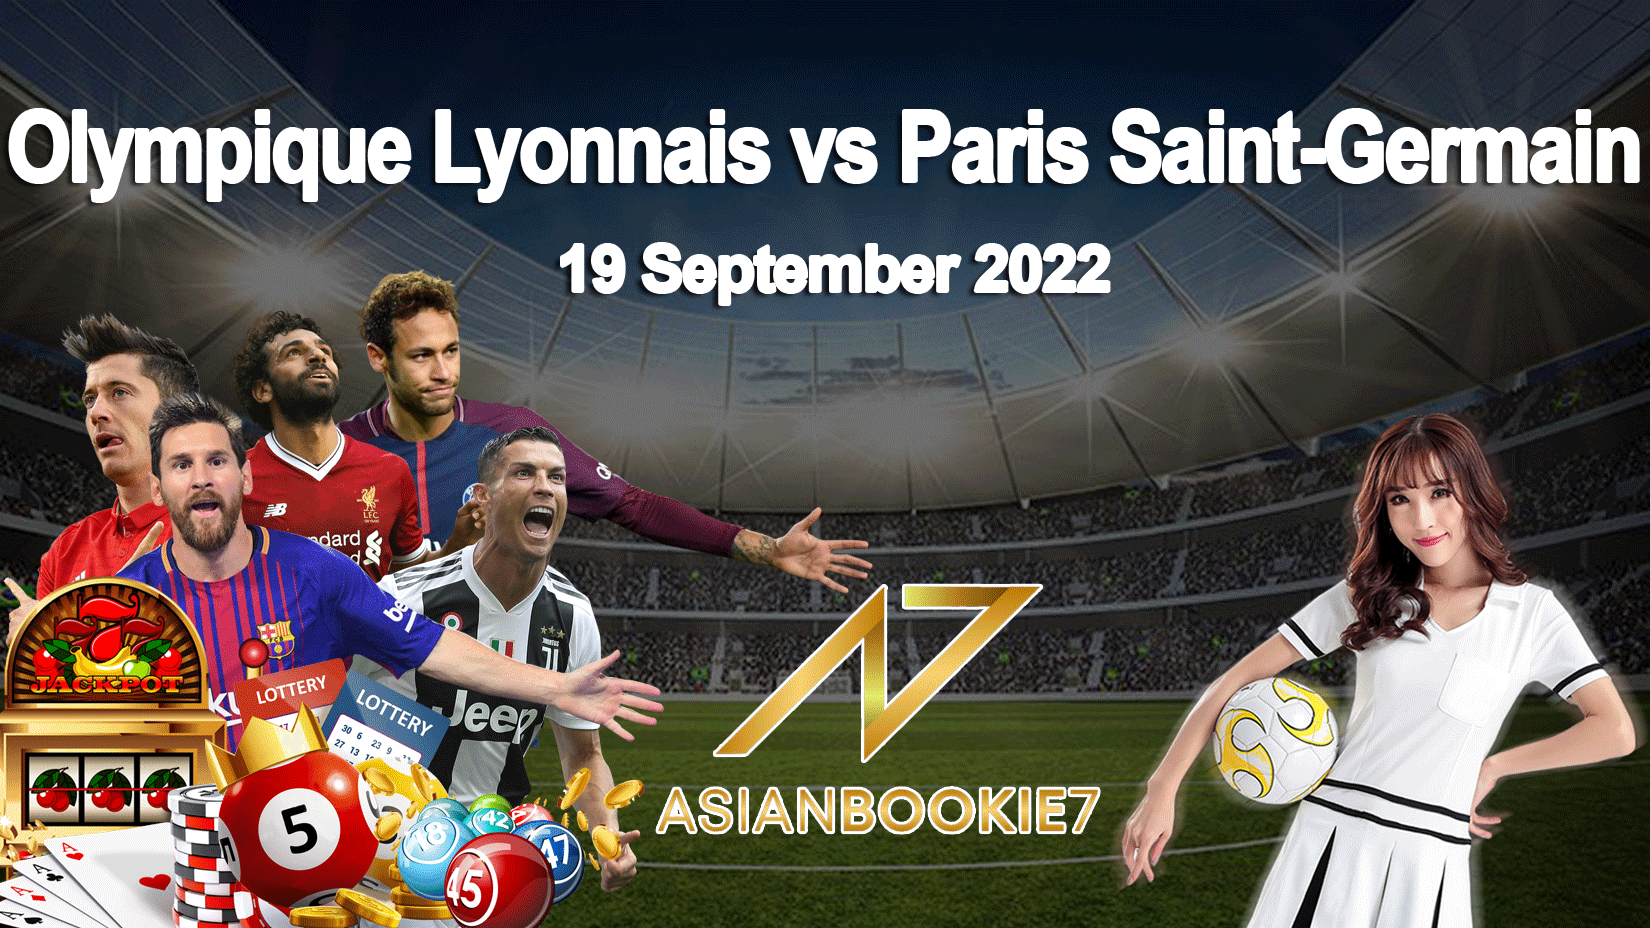 Prediksi Olympique Lyonnais vs Paris Saint-Germain 19 September 2022